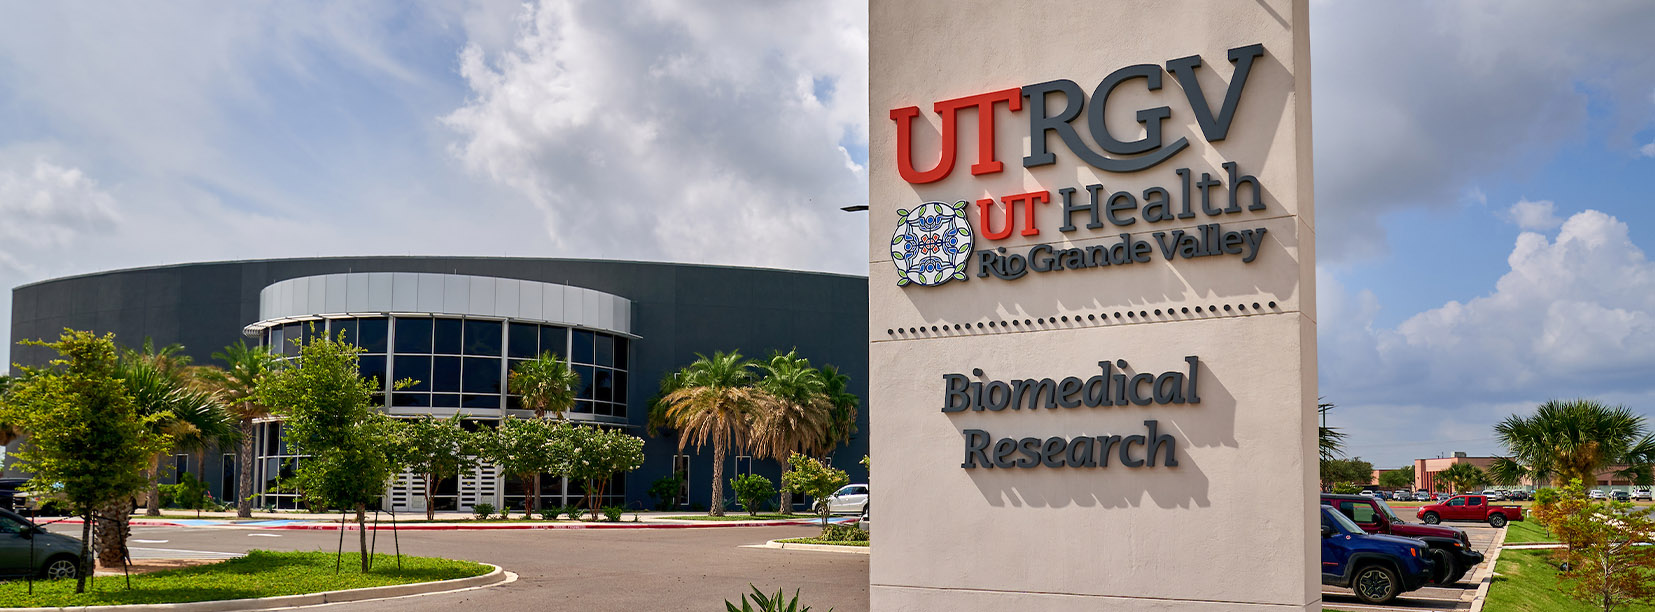 UTRGV Biomedical Research building